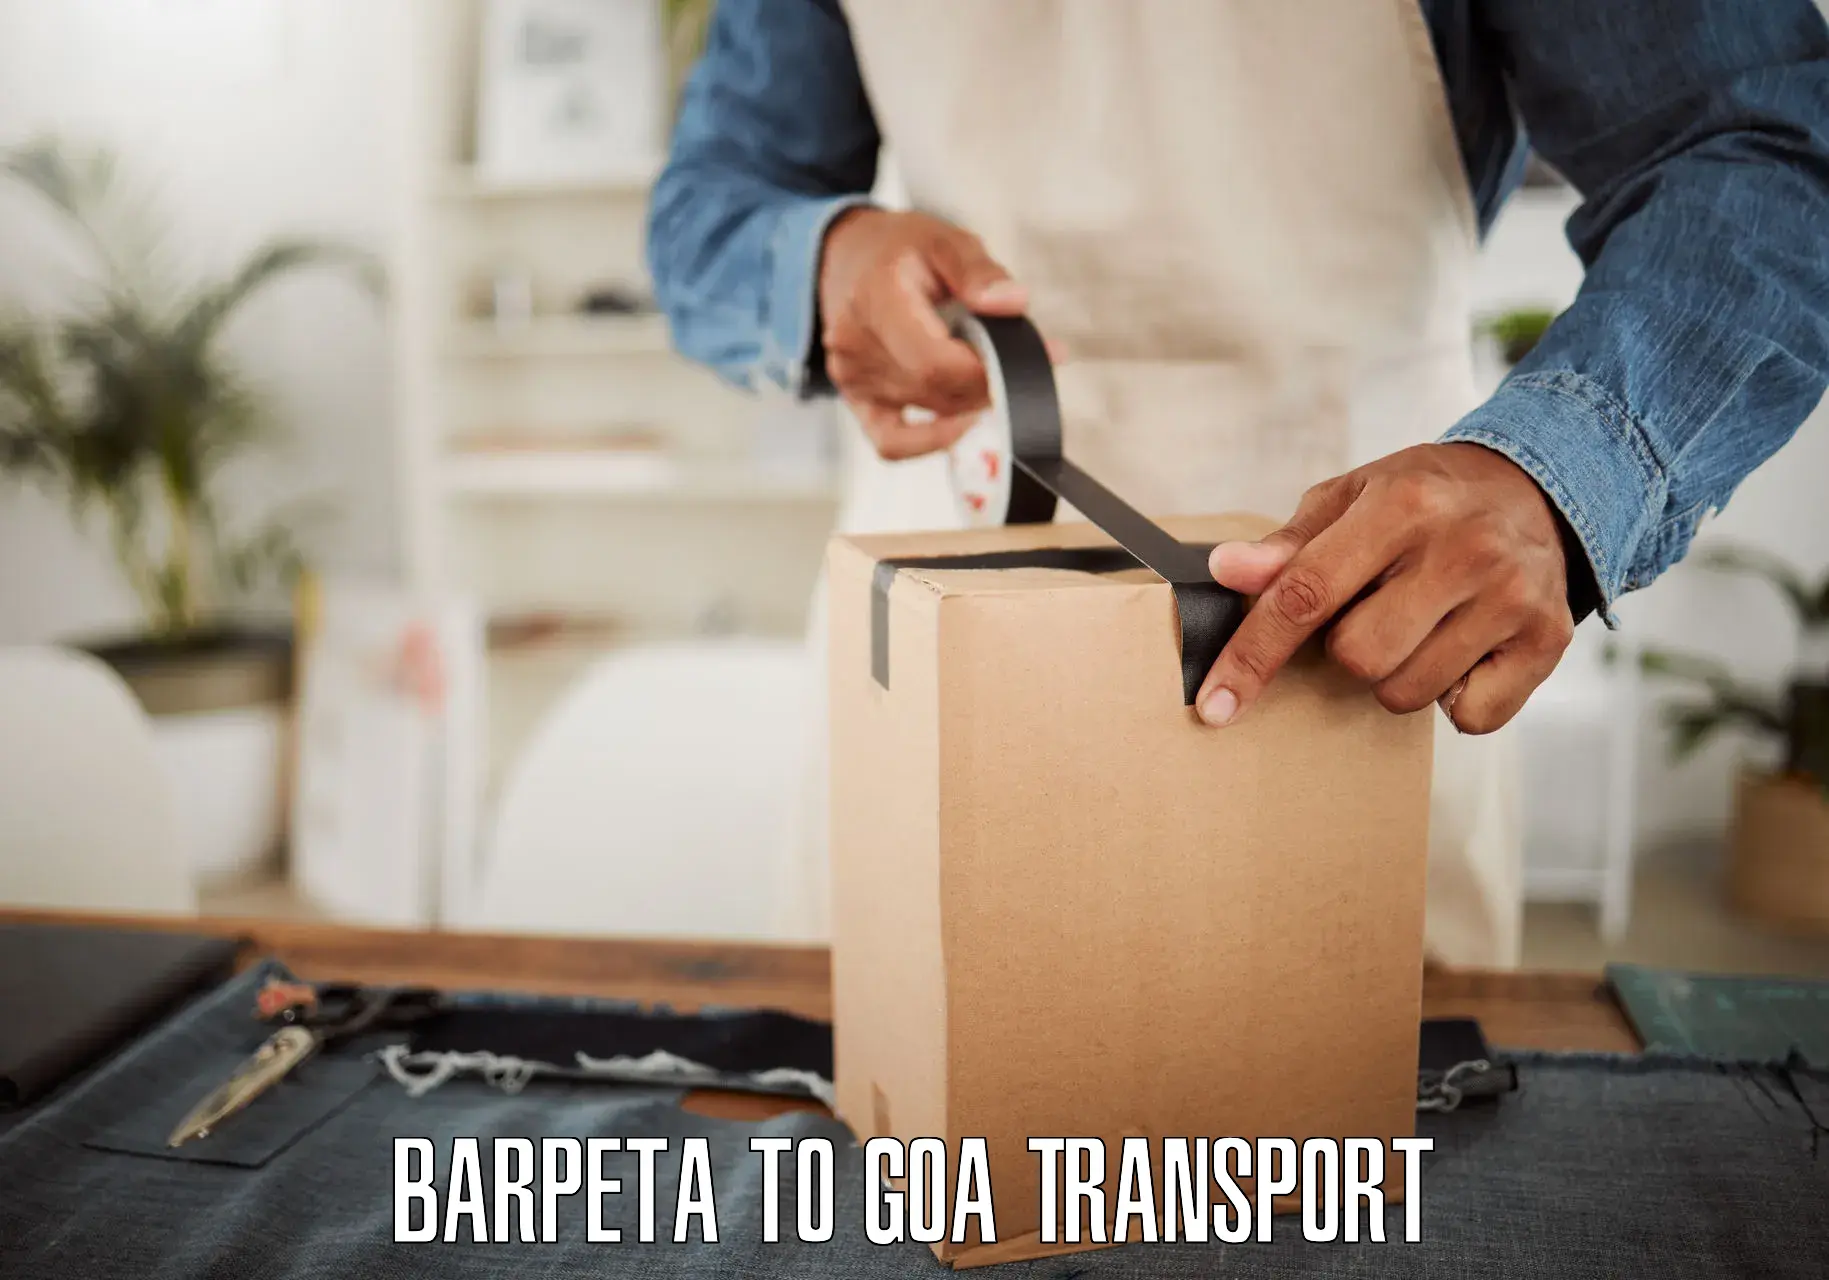 All India transport service Barpeta to Canacona